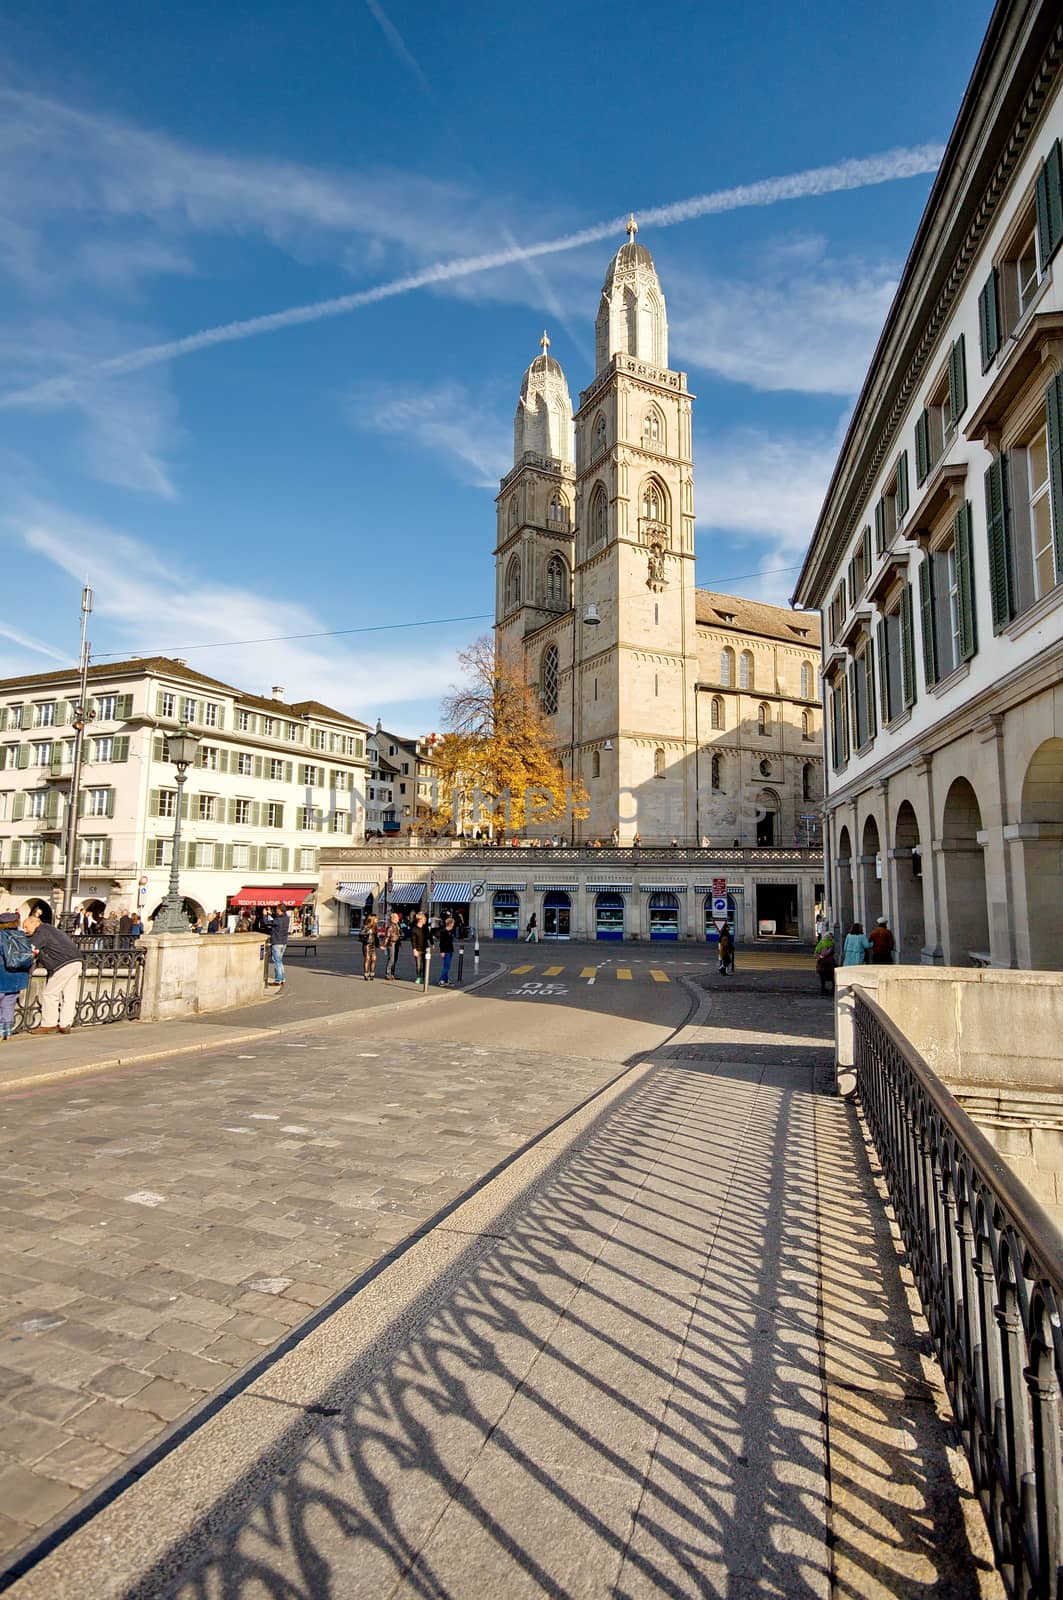 Cathedral of Zurich, Switzerland